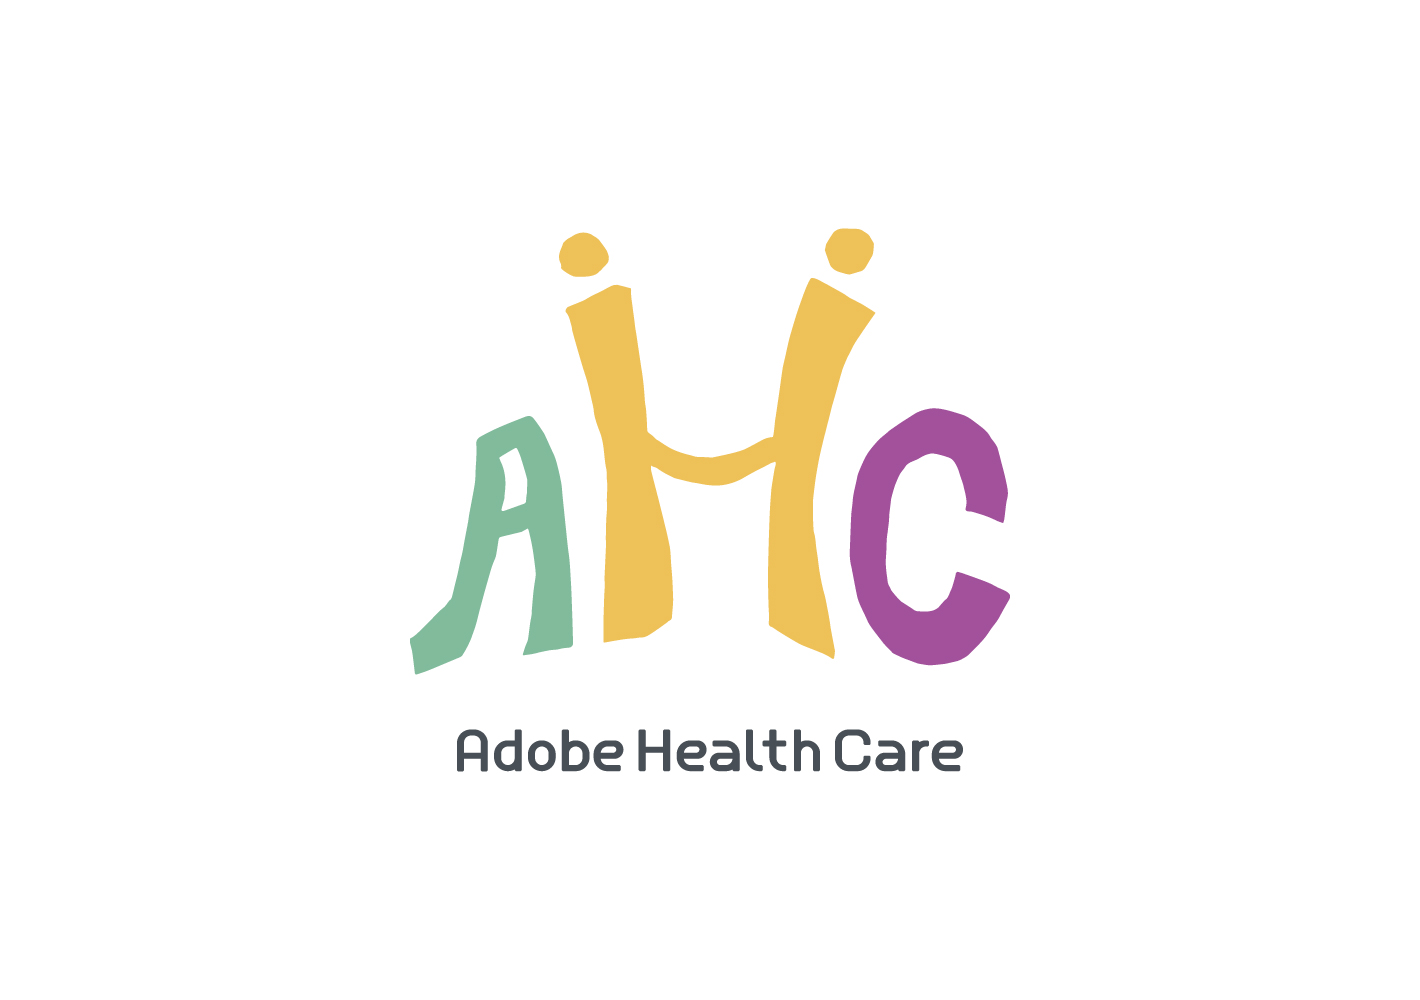 Adobe Health Care